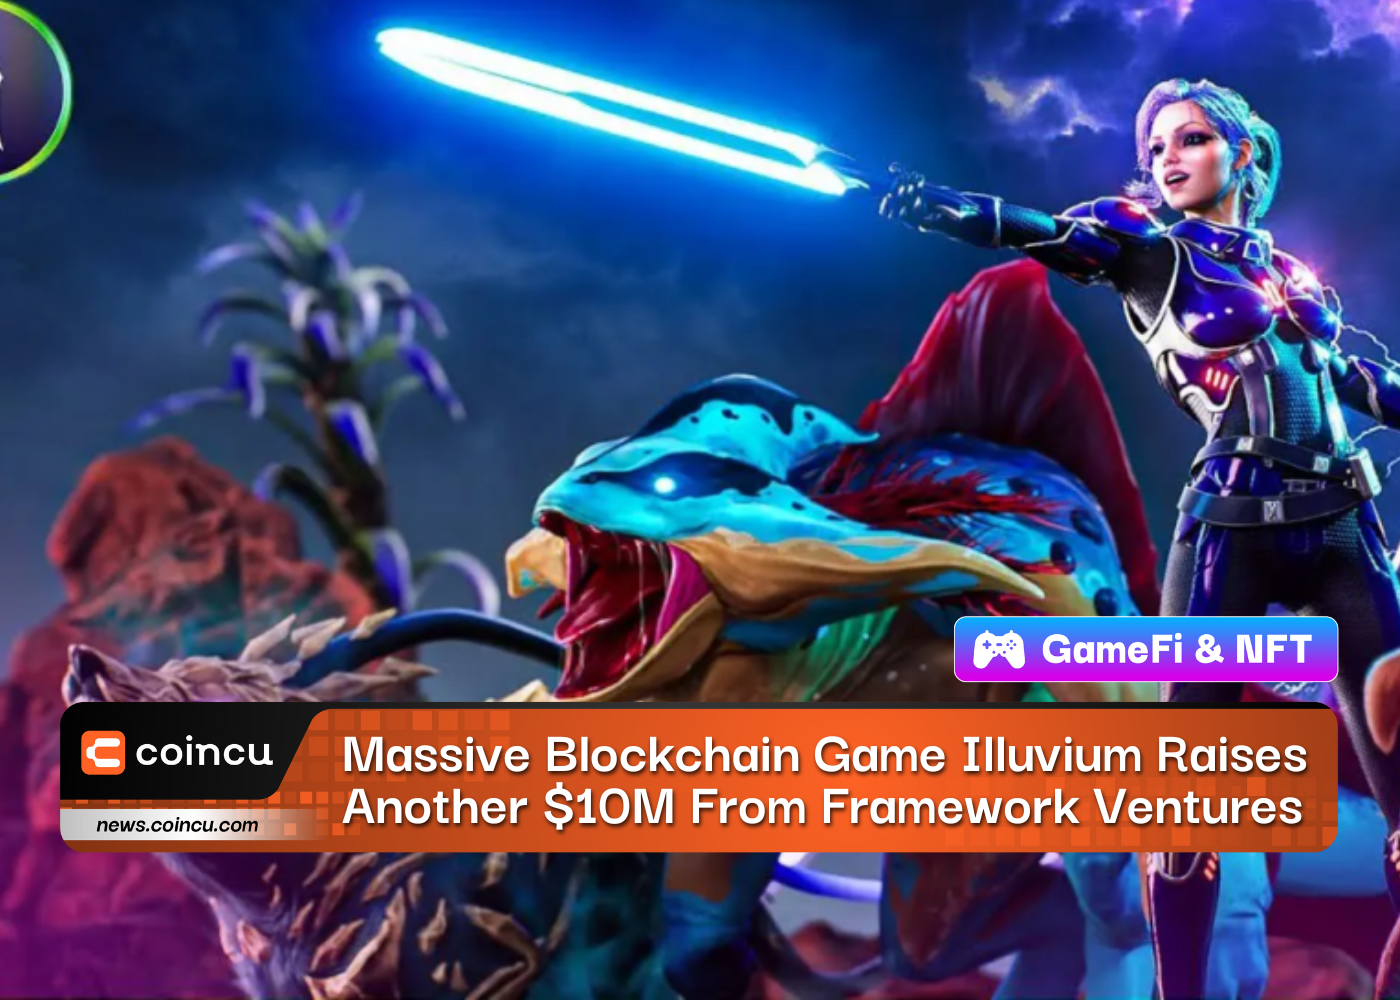 Le jeu massif de blockchain Illuvium lève 10 millions de dollars supplémentaires auprès de Framework Ventures